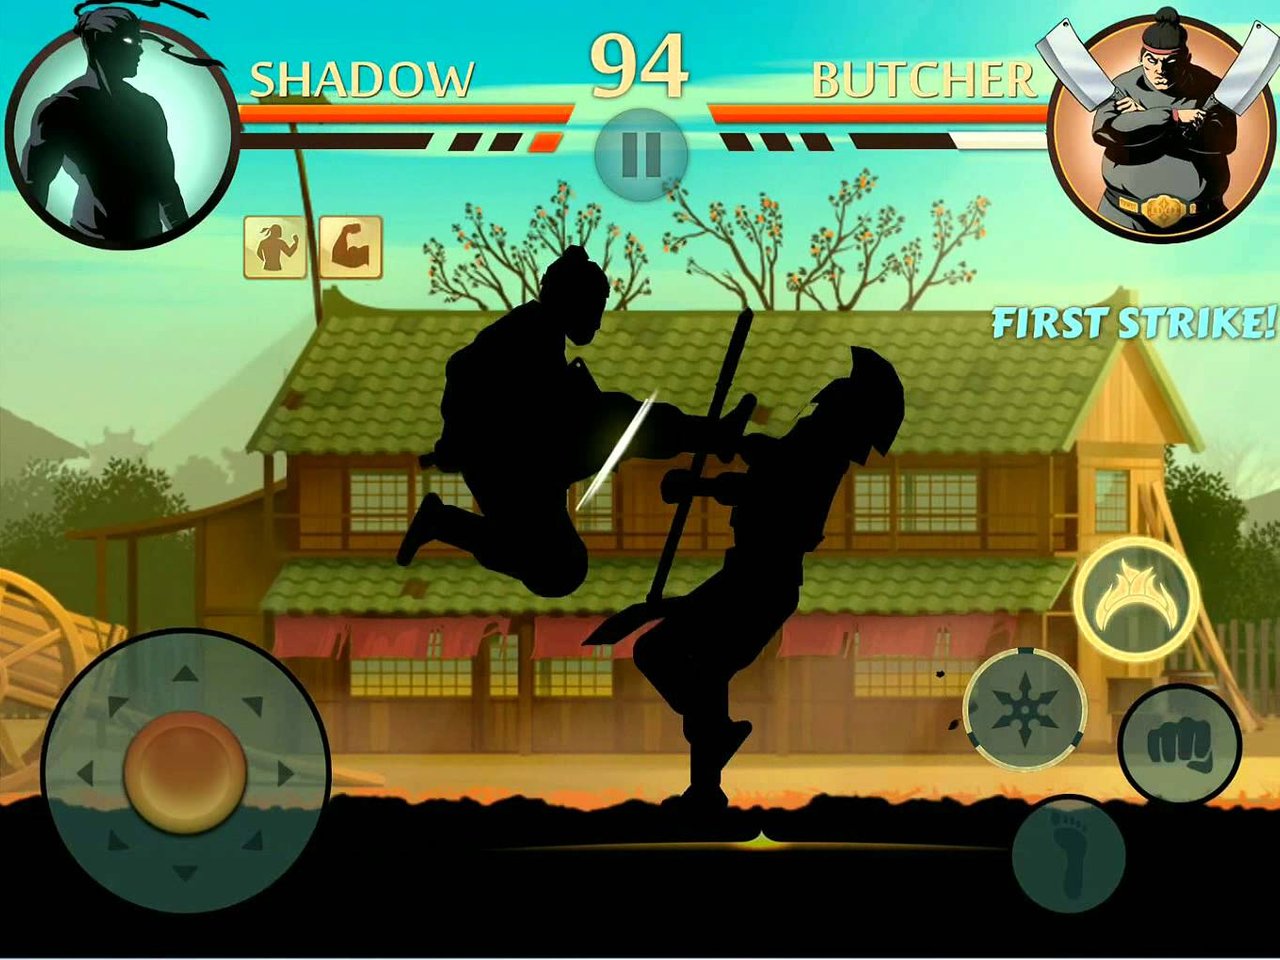 Игры с тенью или семь. Шедоу файт 1. Shadow Fight 2. Шадоу ниндзя игра. Тень из игры Shadow Fight 2.